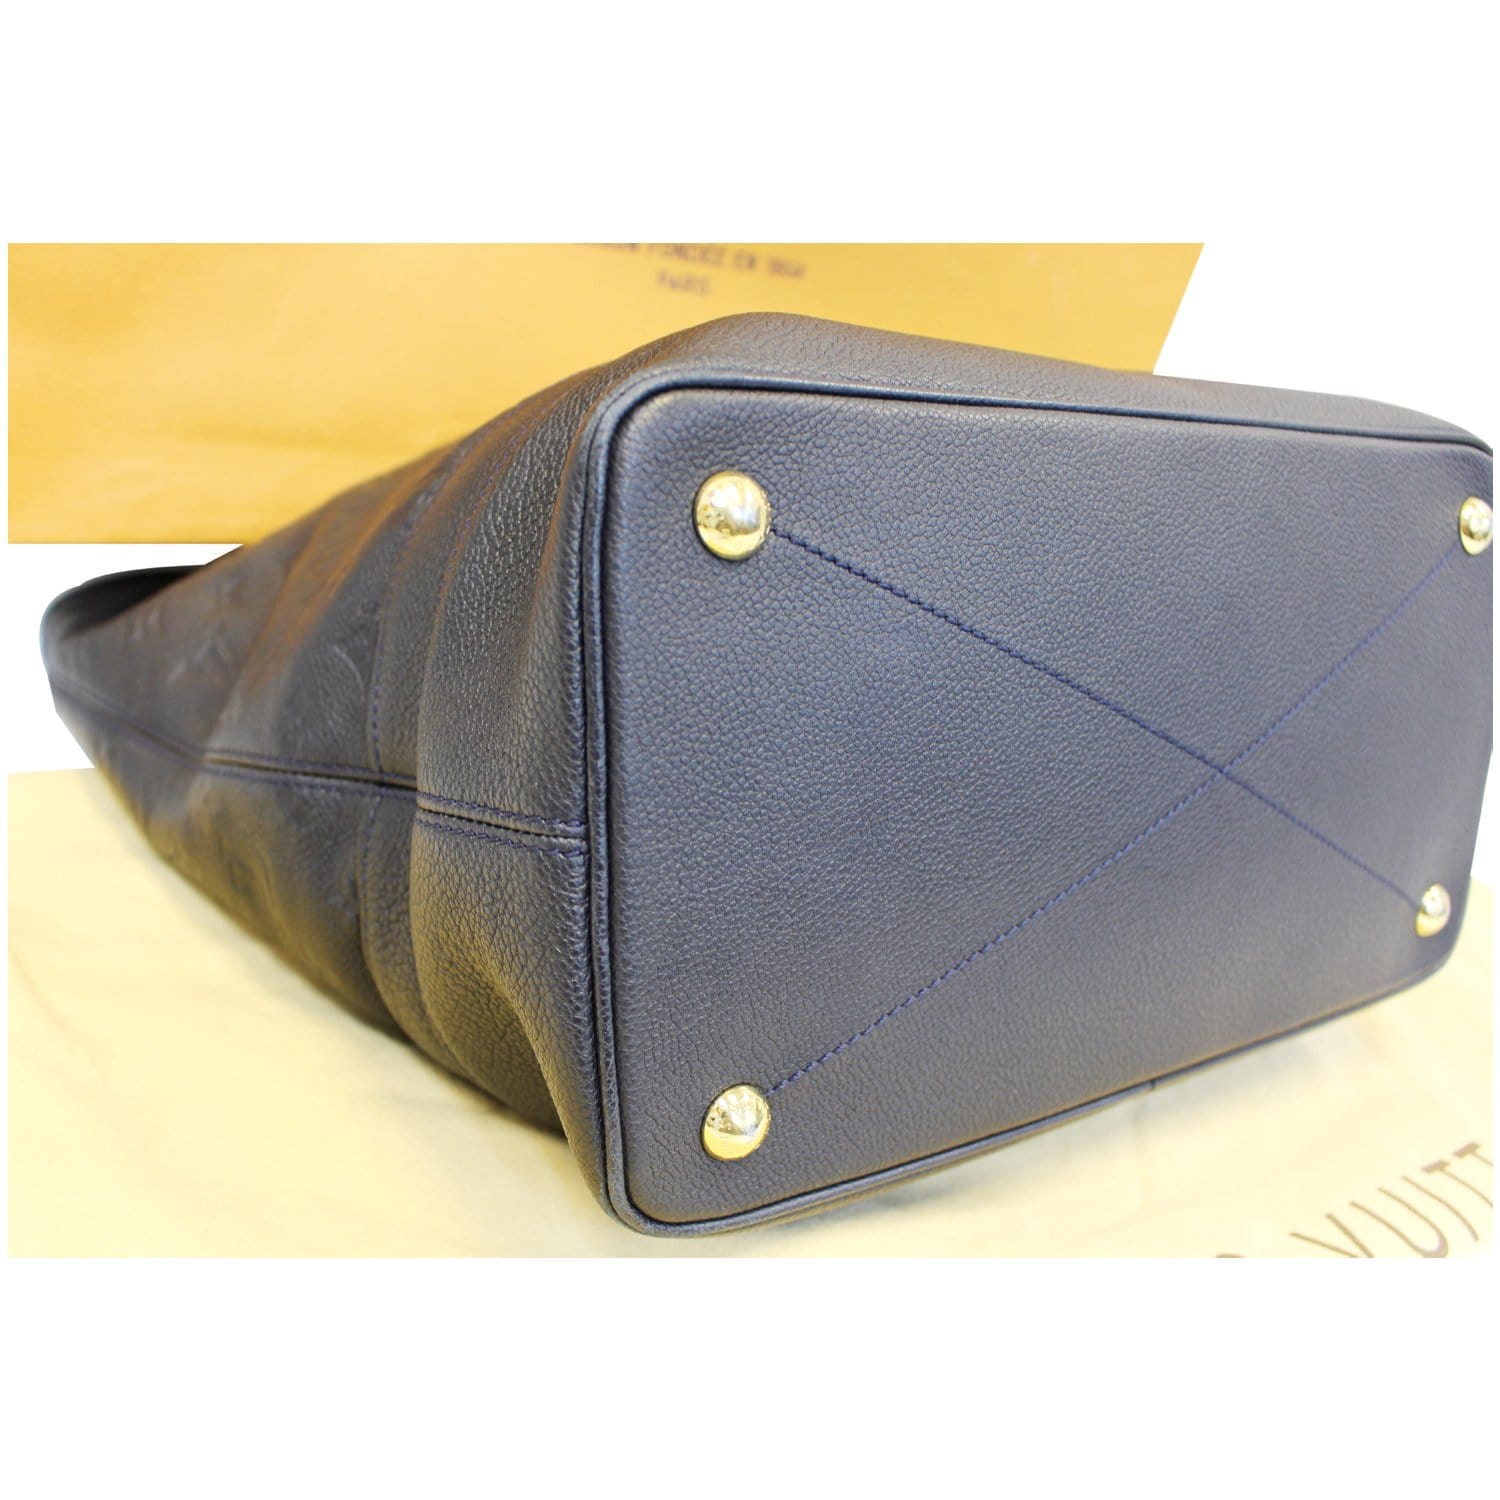 LOUIS VUITTON Citadine PM Monogram Empreinte Leather Orient Shoulder Bag  M40556